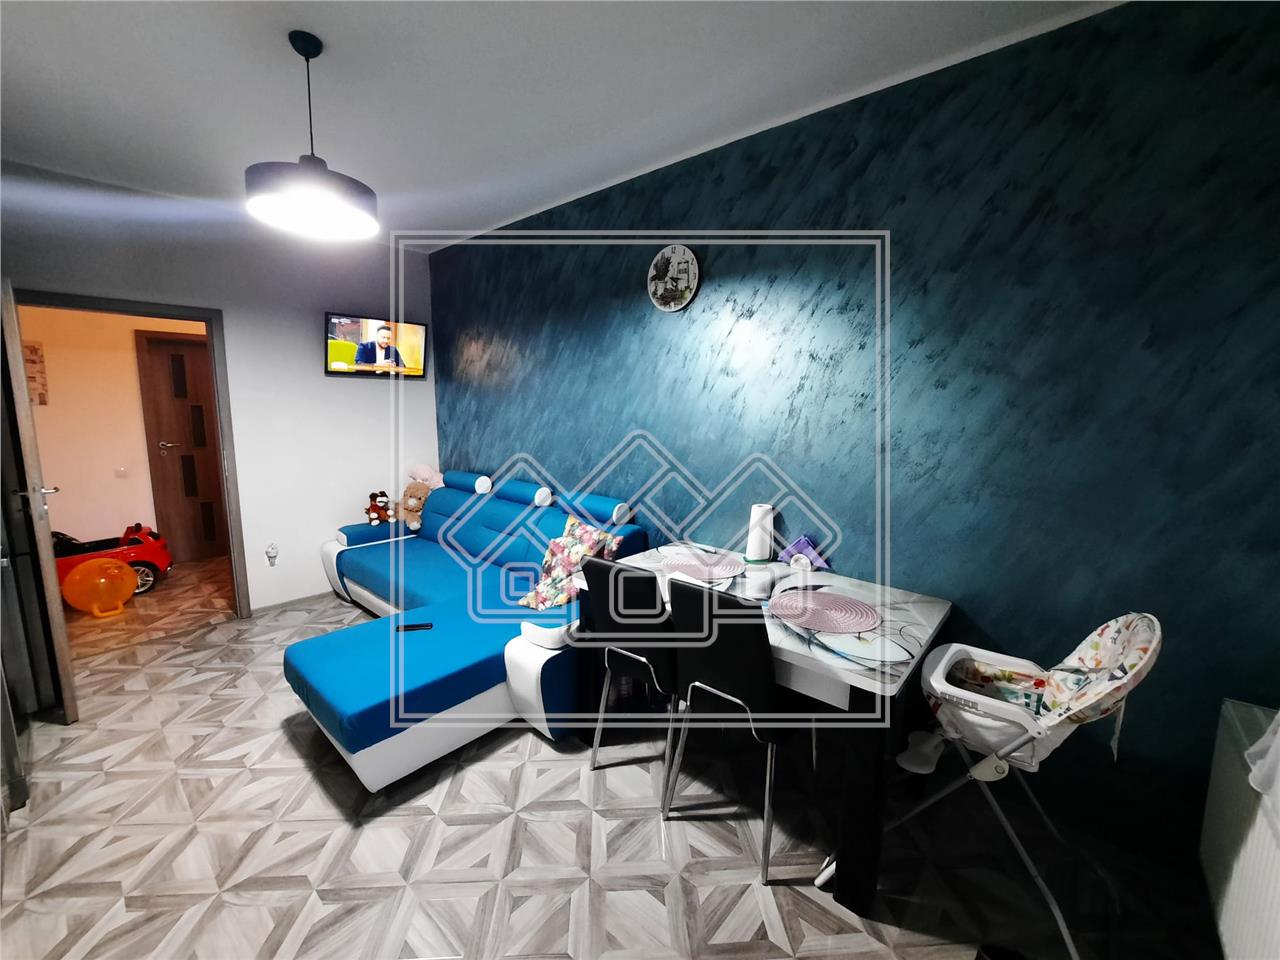 Apartament de vanzare in Sibiu - 60 mp utili - curte 90 mp